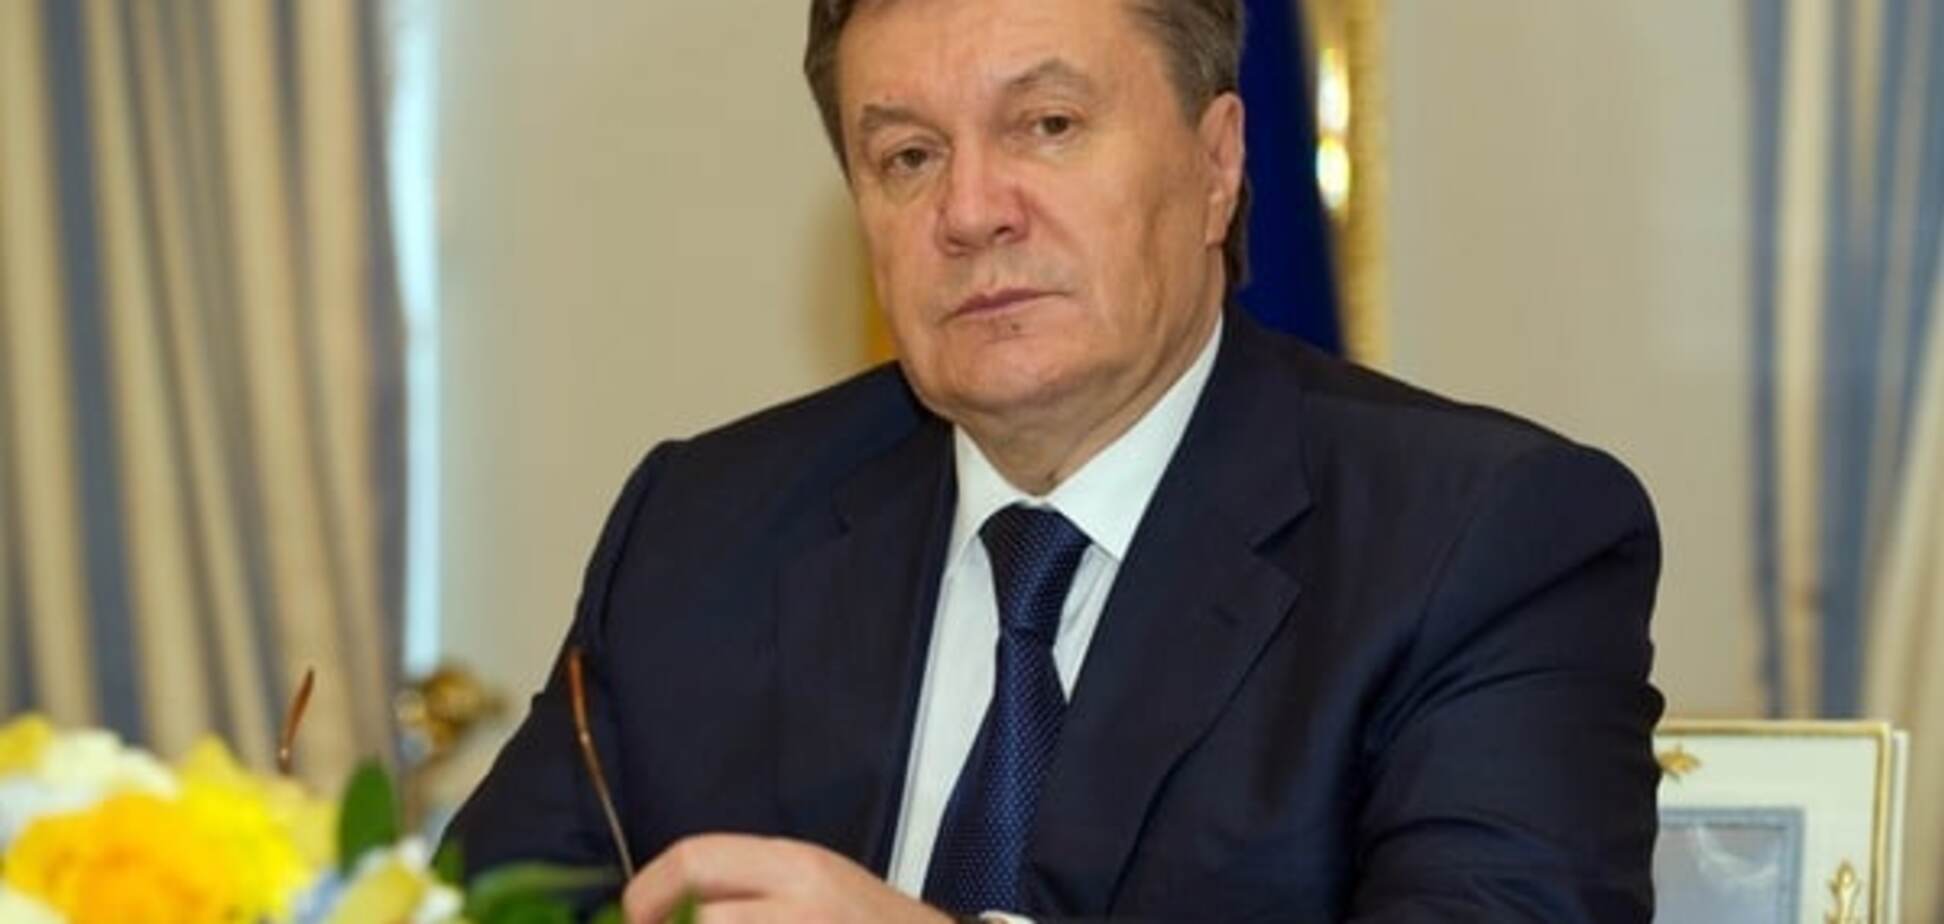 ЕС продлит санкции против Януковича и его окружения — СМИ